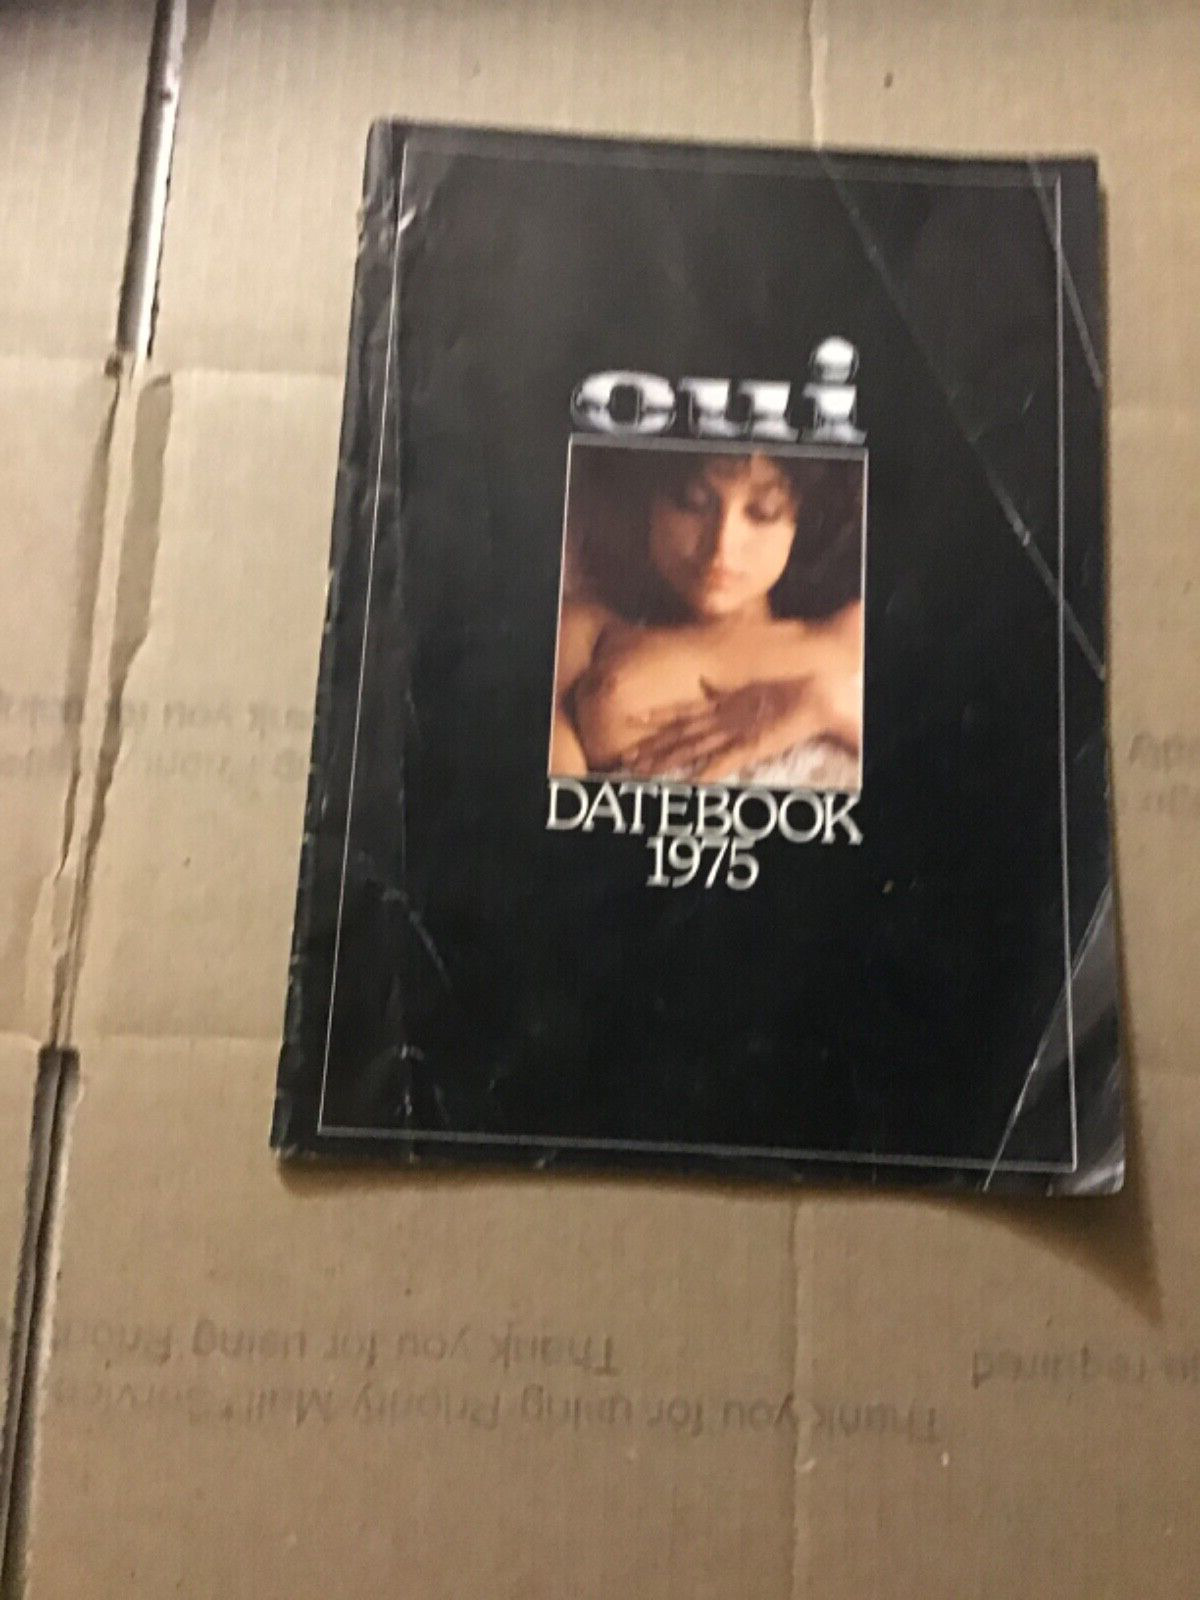 Vintage OUI 1975 DATEBOOK. RARE Find